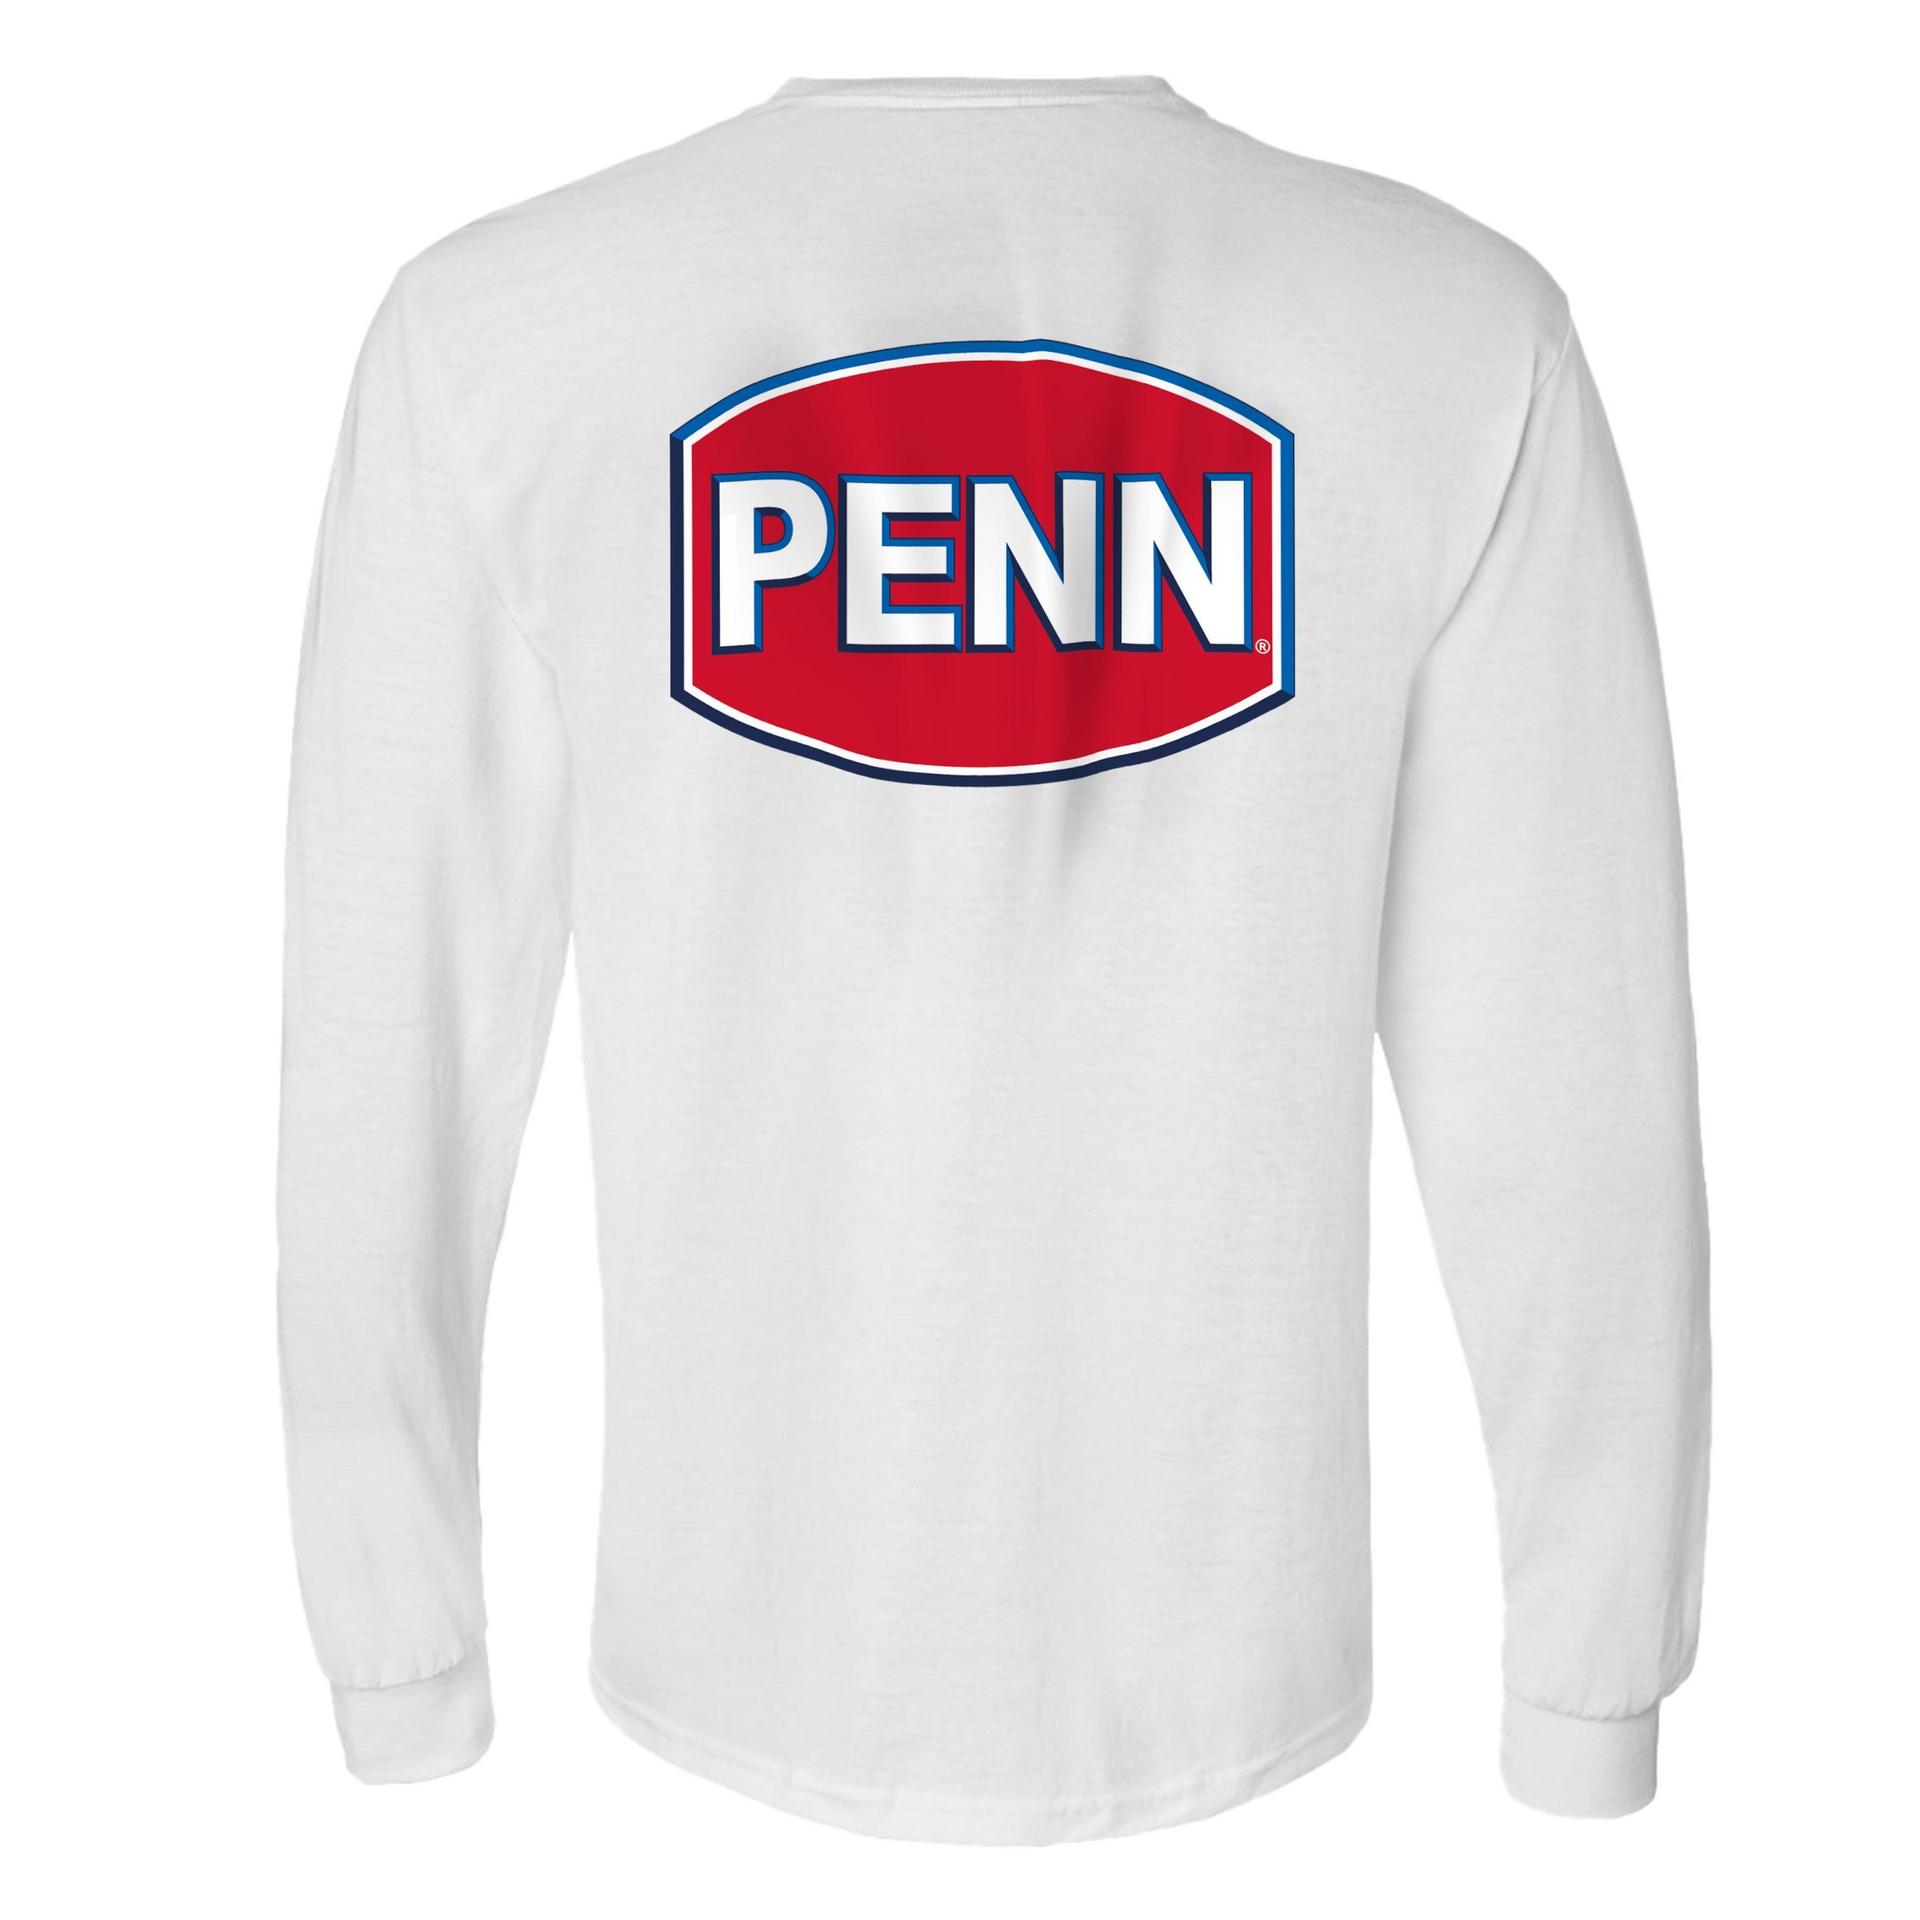 Penn Fishing Gear Reel Rod T-shirt Tee Shirt Gift Cotton Hipster Best  Quality - AliExpress